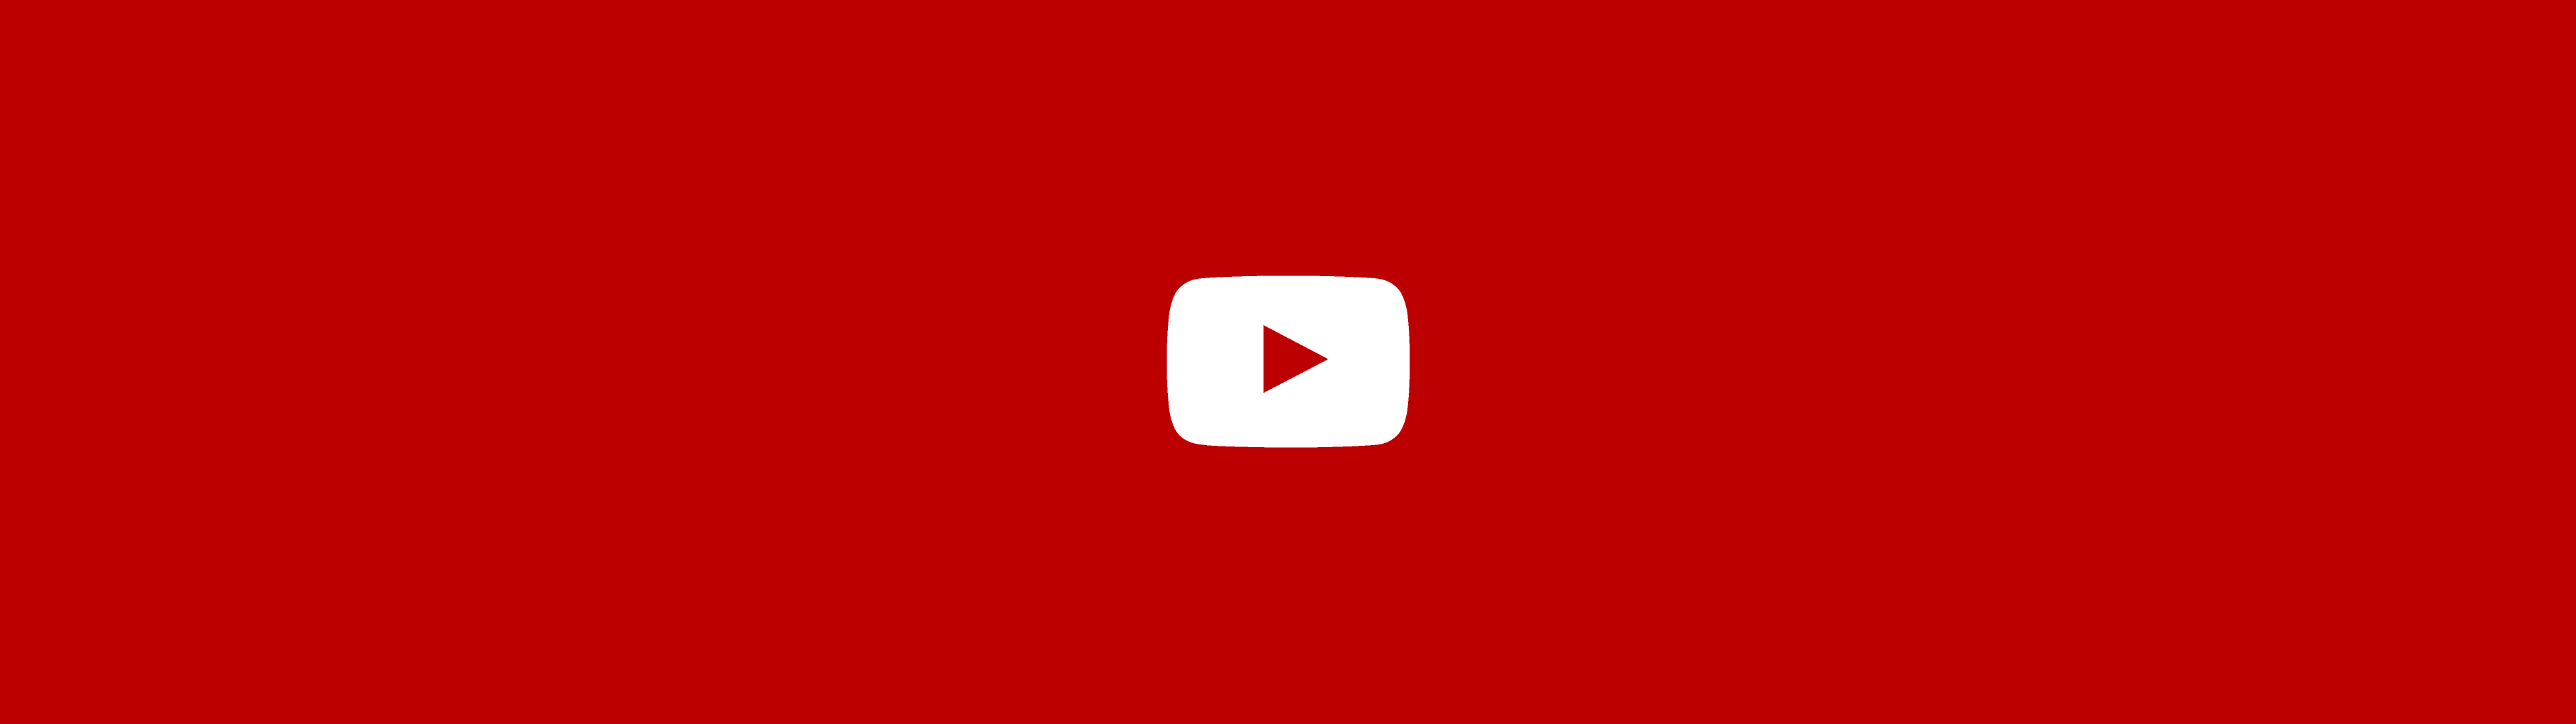 Illustration représentant le logo de YouTube sur sa couleur officielle